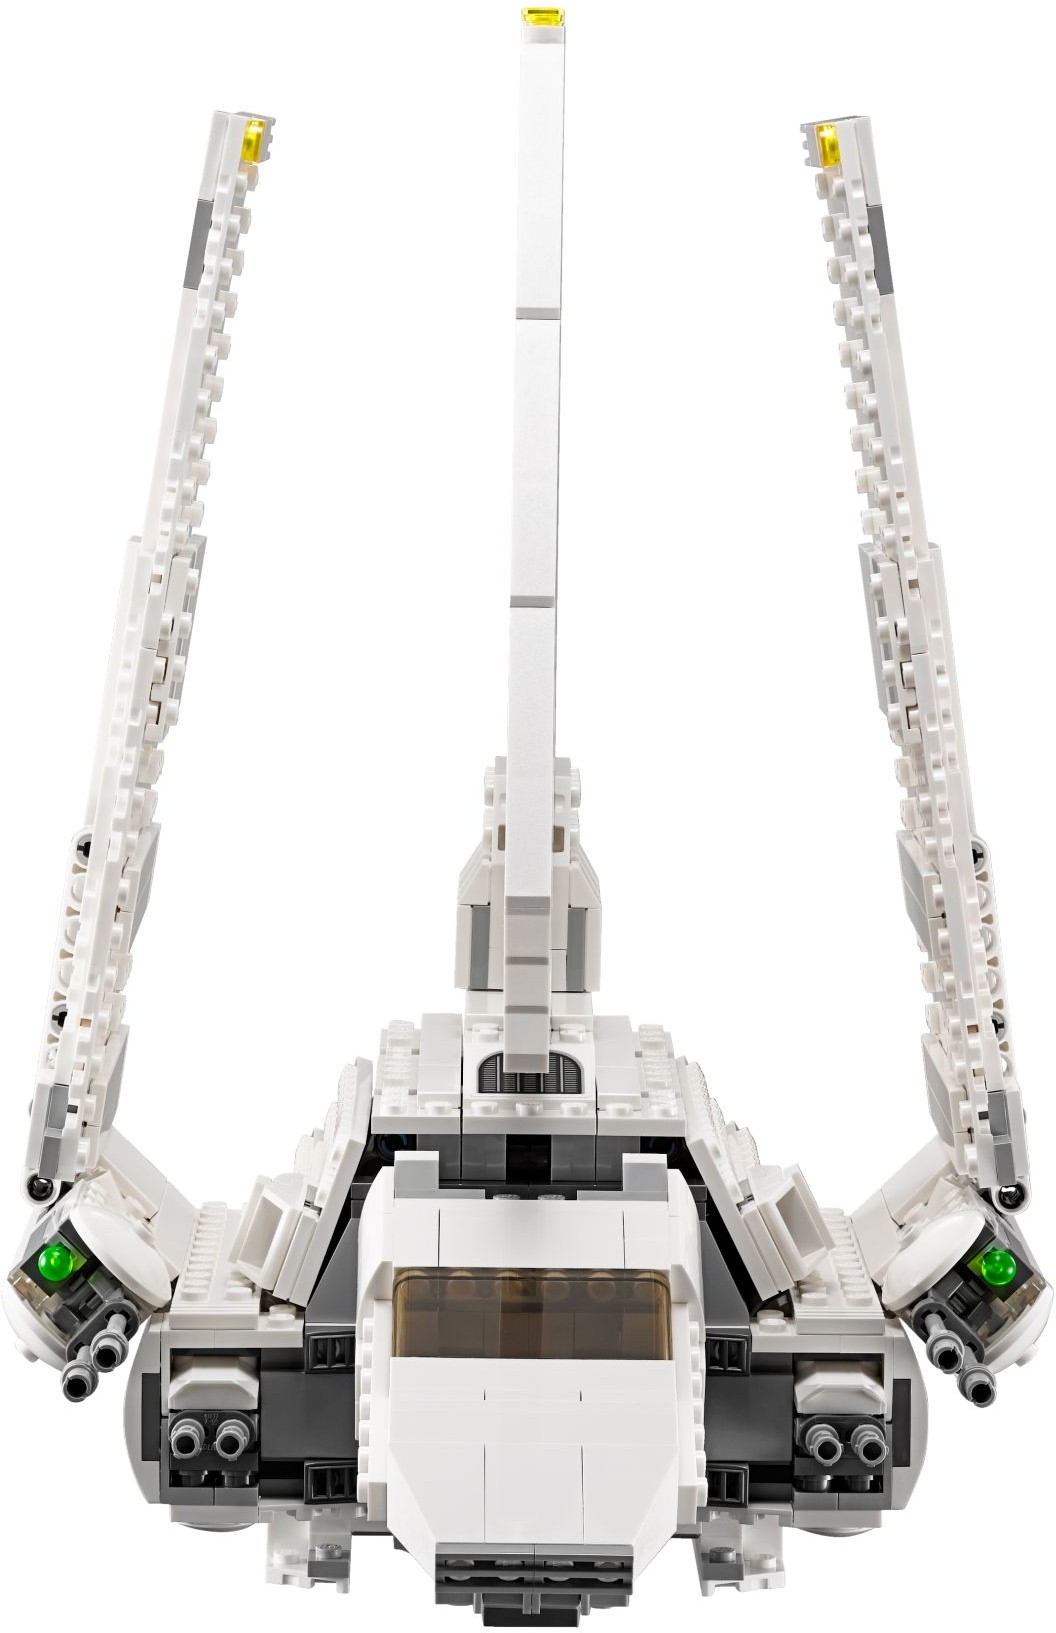 lego star wars imperial shuttle tydirium 75094 build